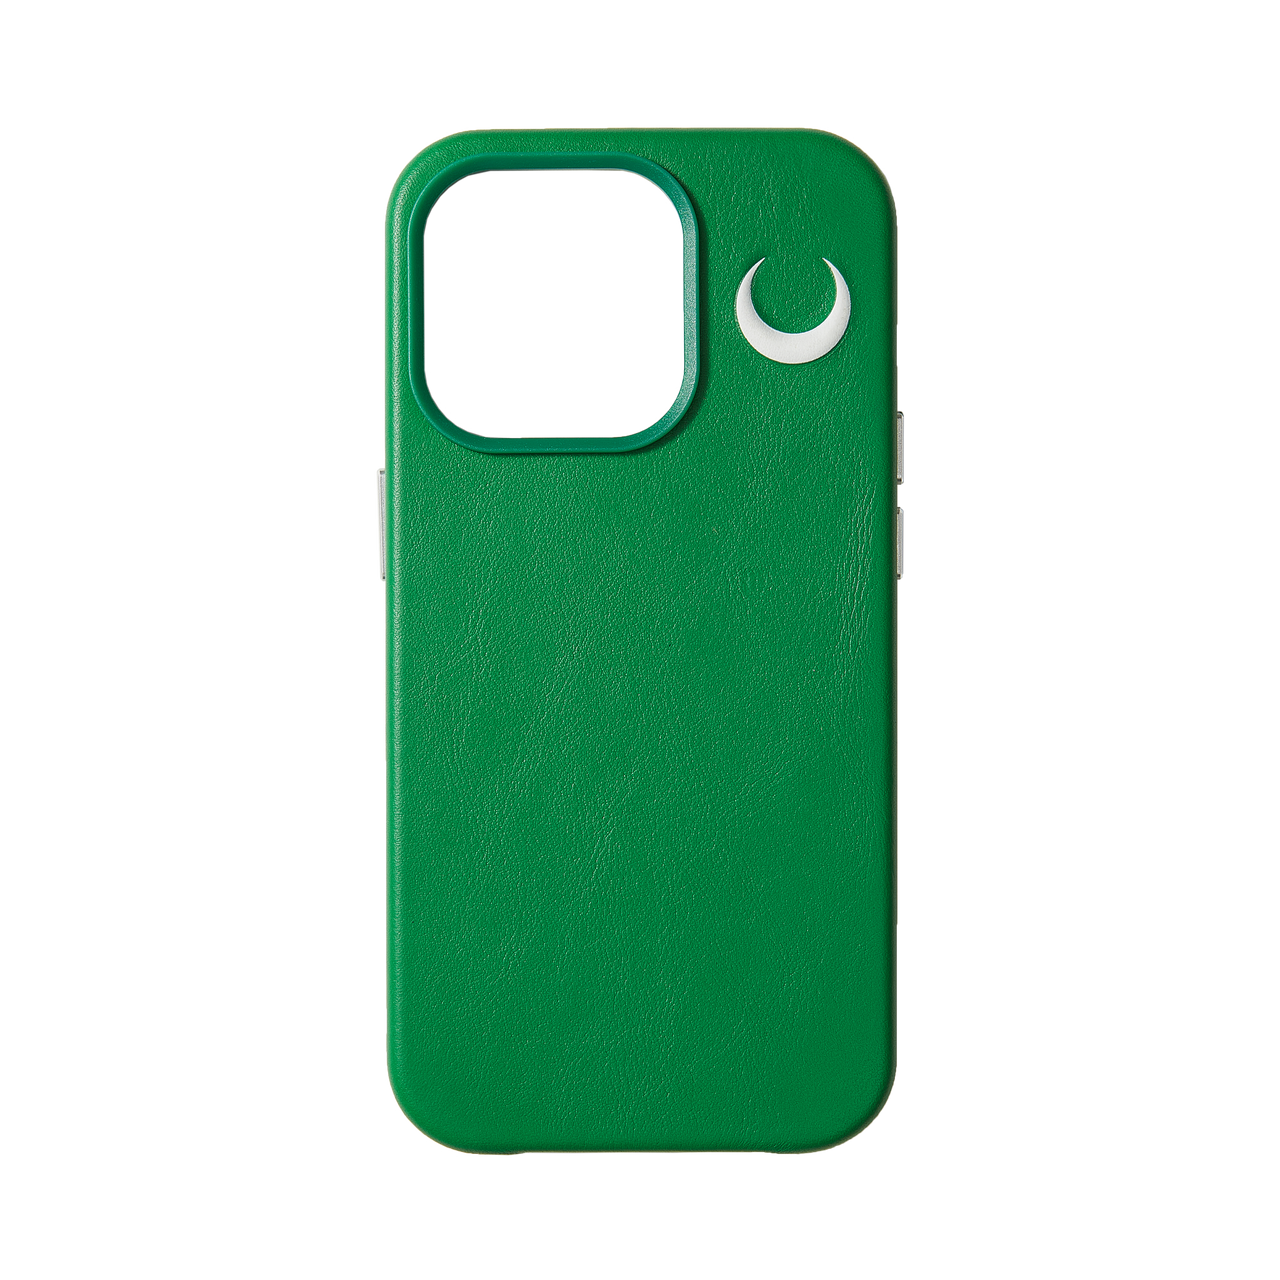 新月 壓印圖案 綠色 真皮 iphone 保護殼